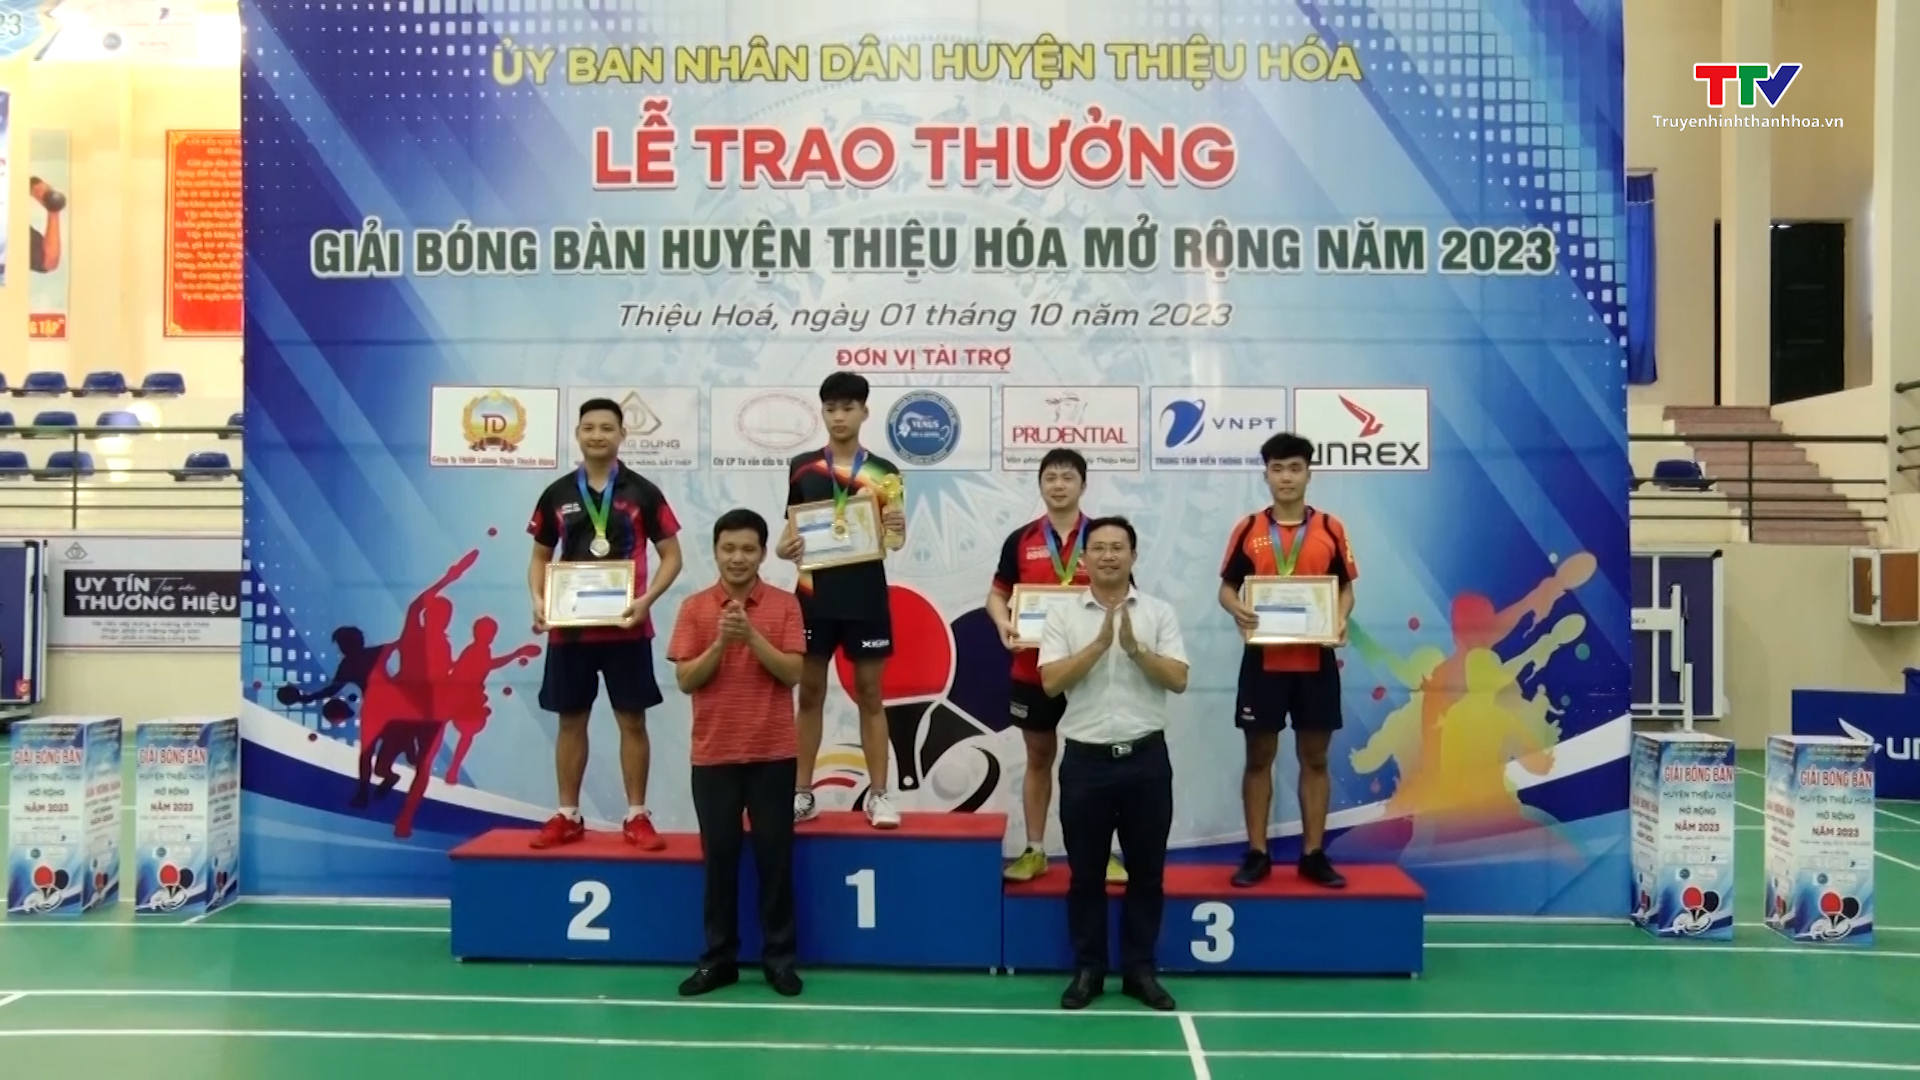 Giải bóng bàn huyện Thiệu Hóa mở rộng năm 2023 thu hút nhiều tay vợt mạnh trong và ngoài tỉnh - Ảnh 3.